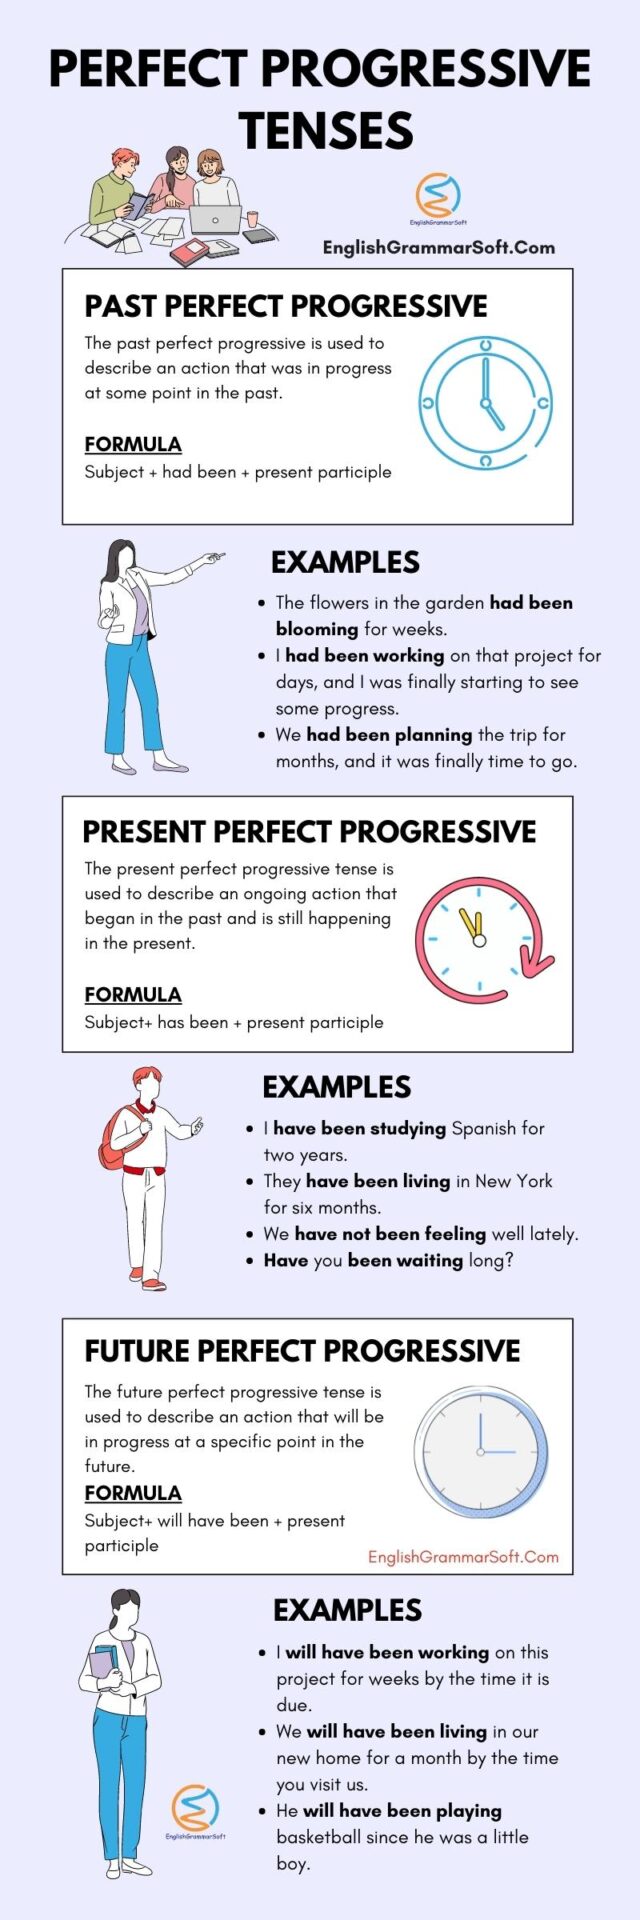 Perfect Progressive Tenses Formula and Examples